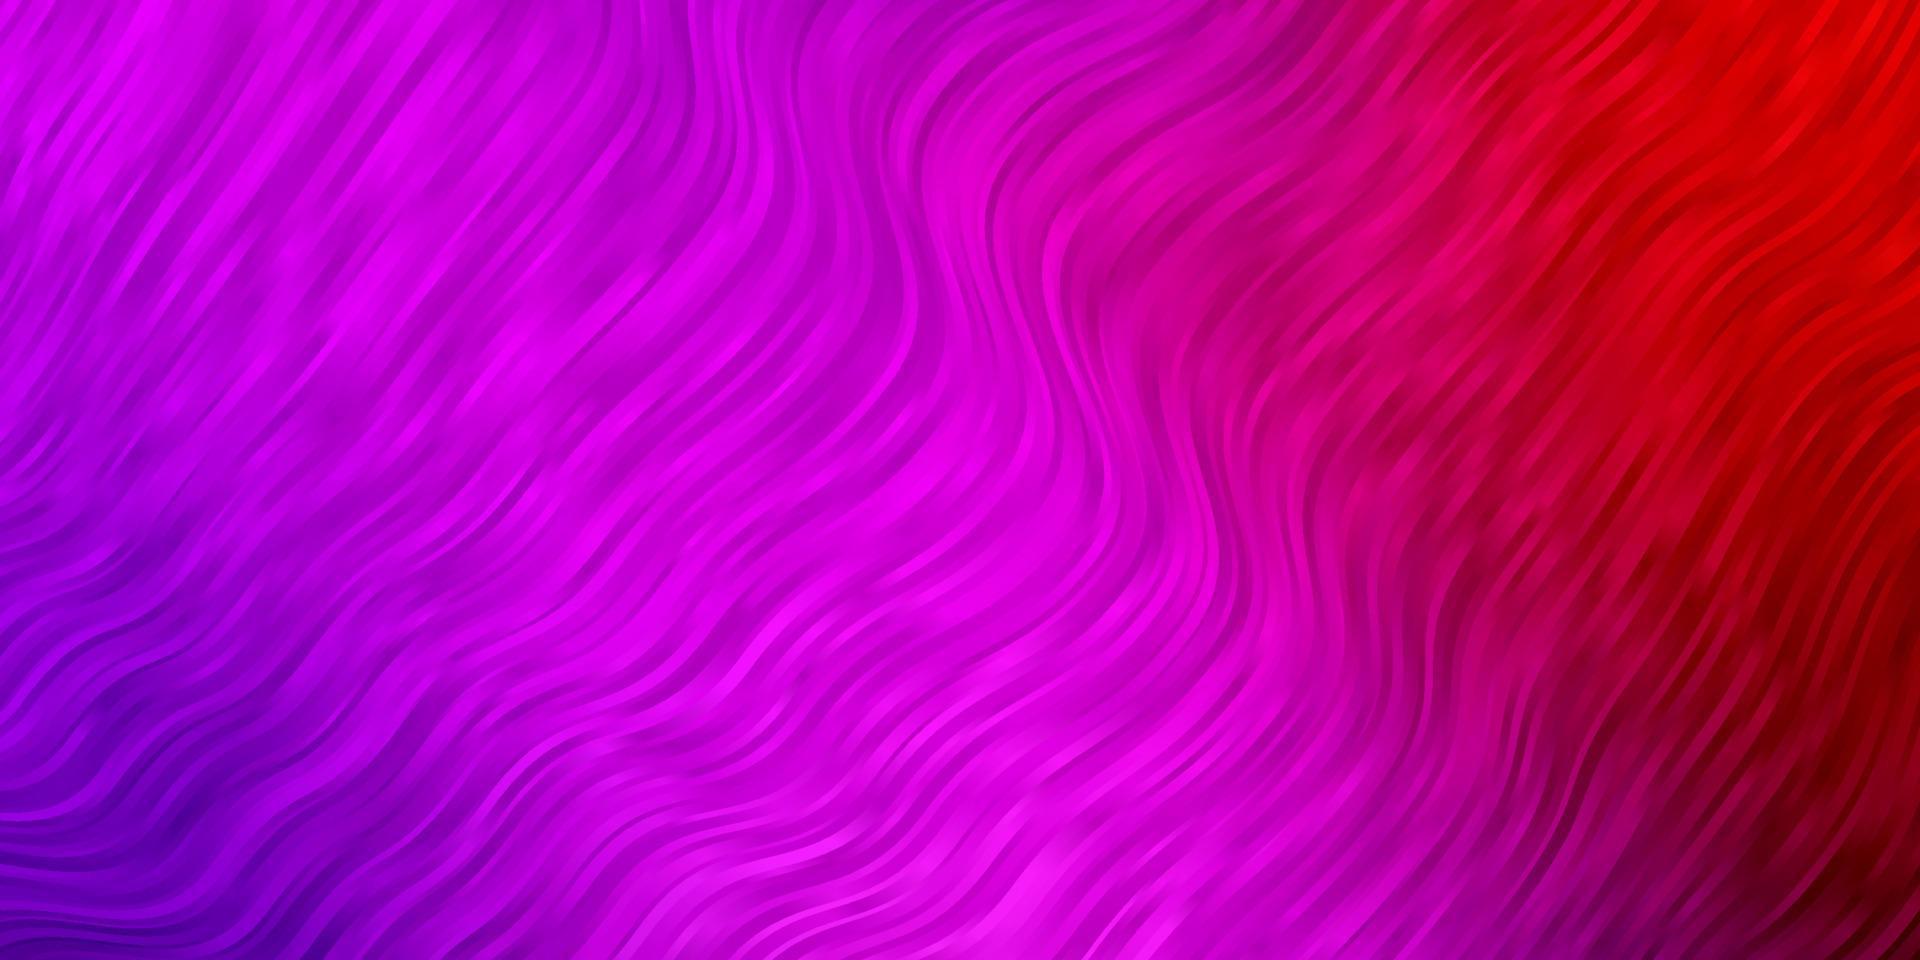 textura de vetor rosa claro, vermelho com curvas.